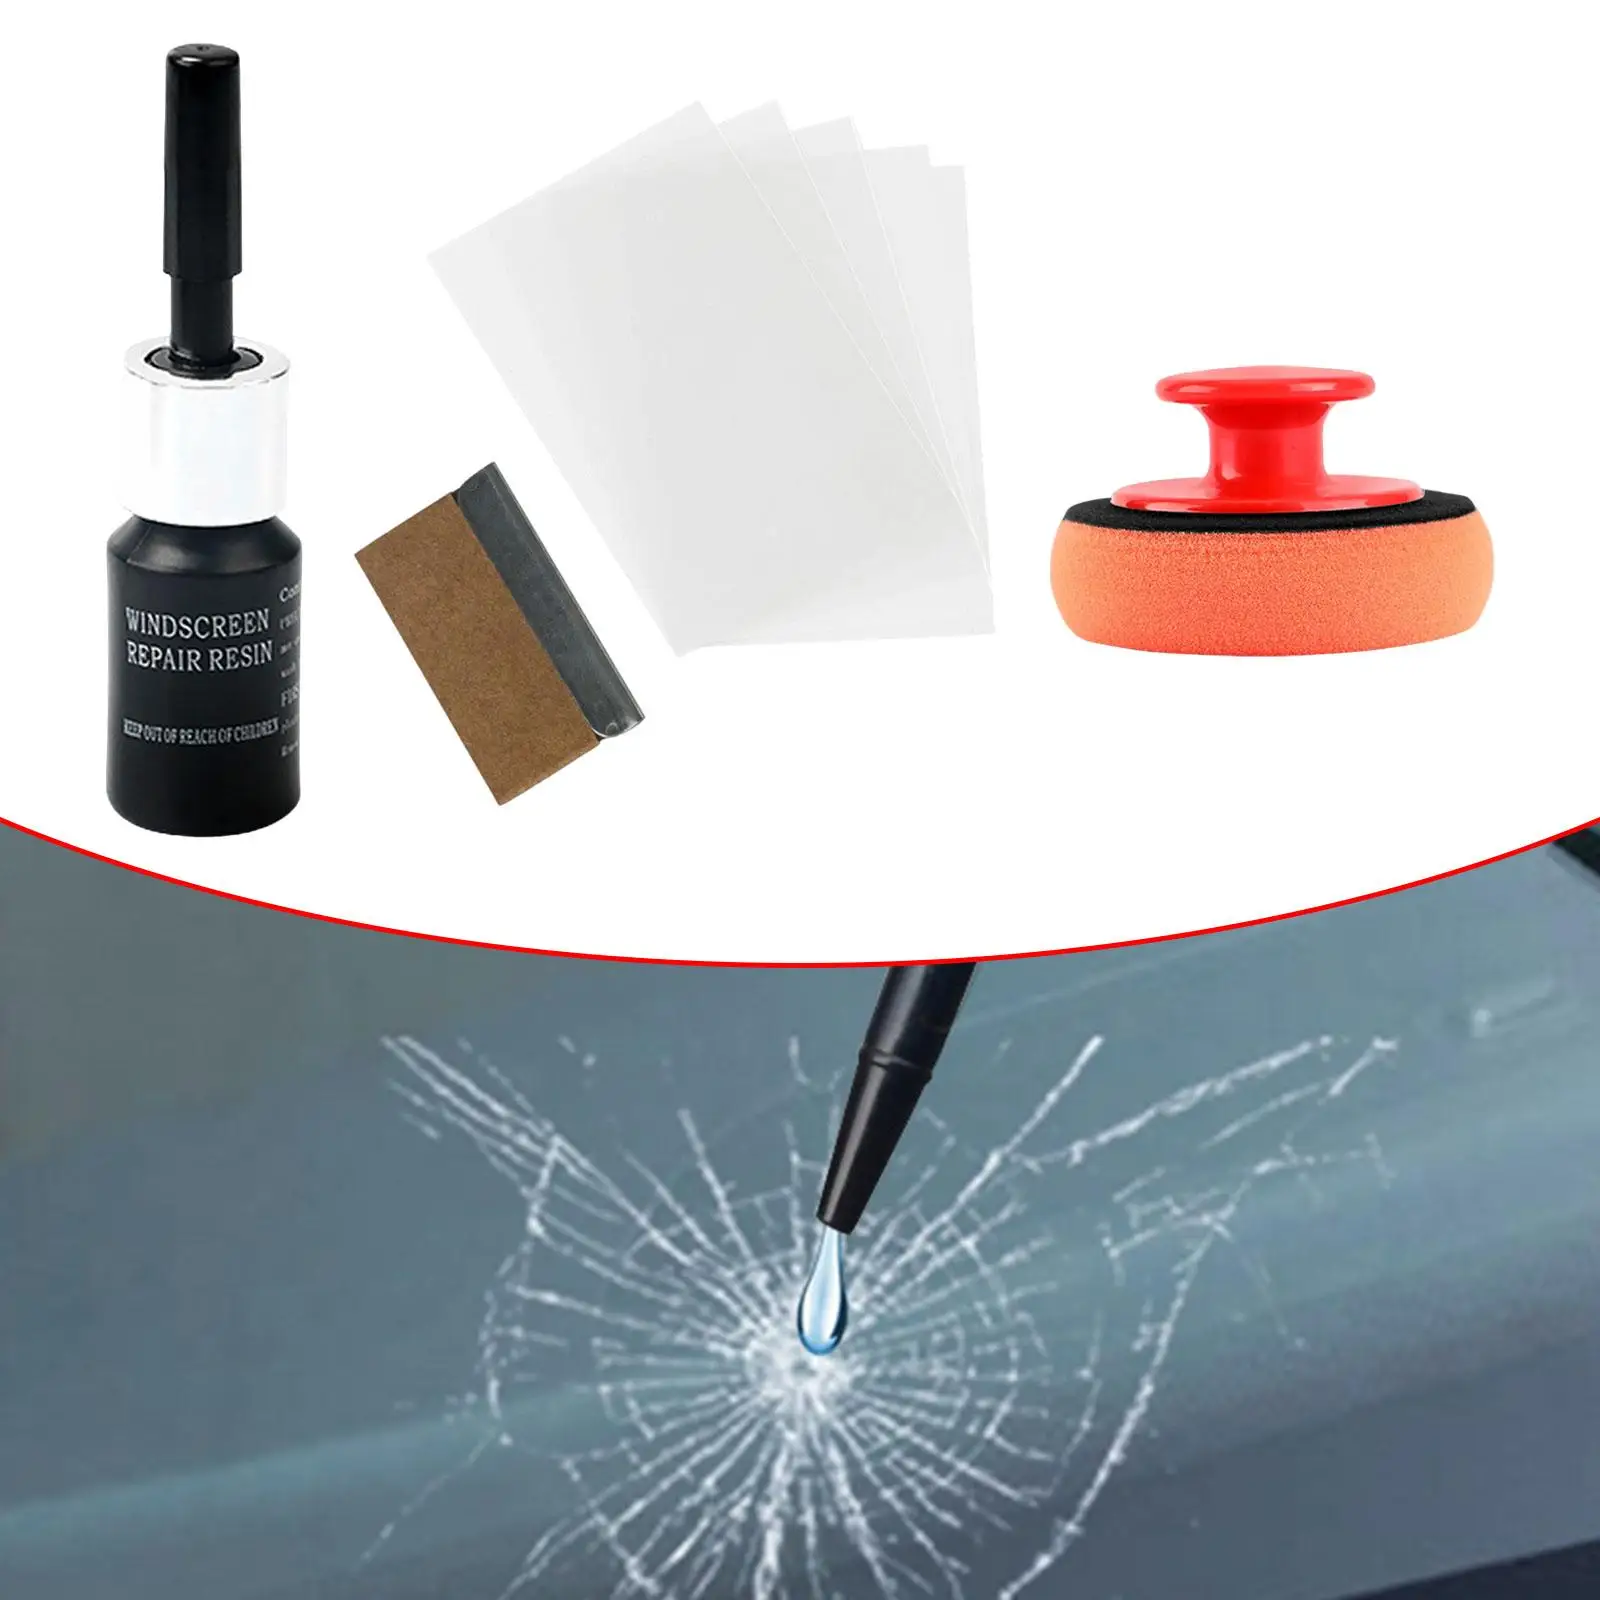 Car Windshield Crack Repair Kit for Scratch Cracks Repairing Chips